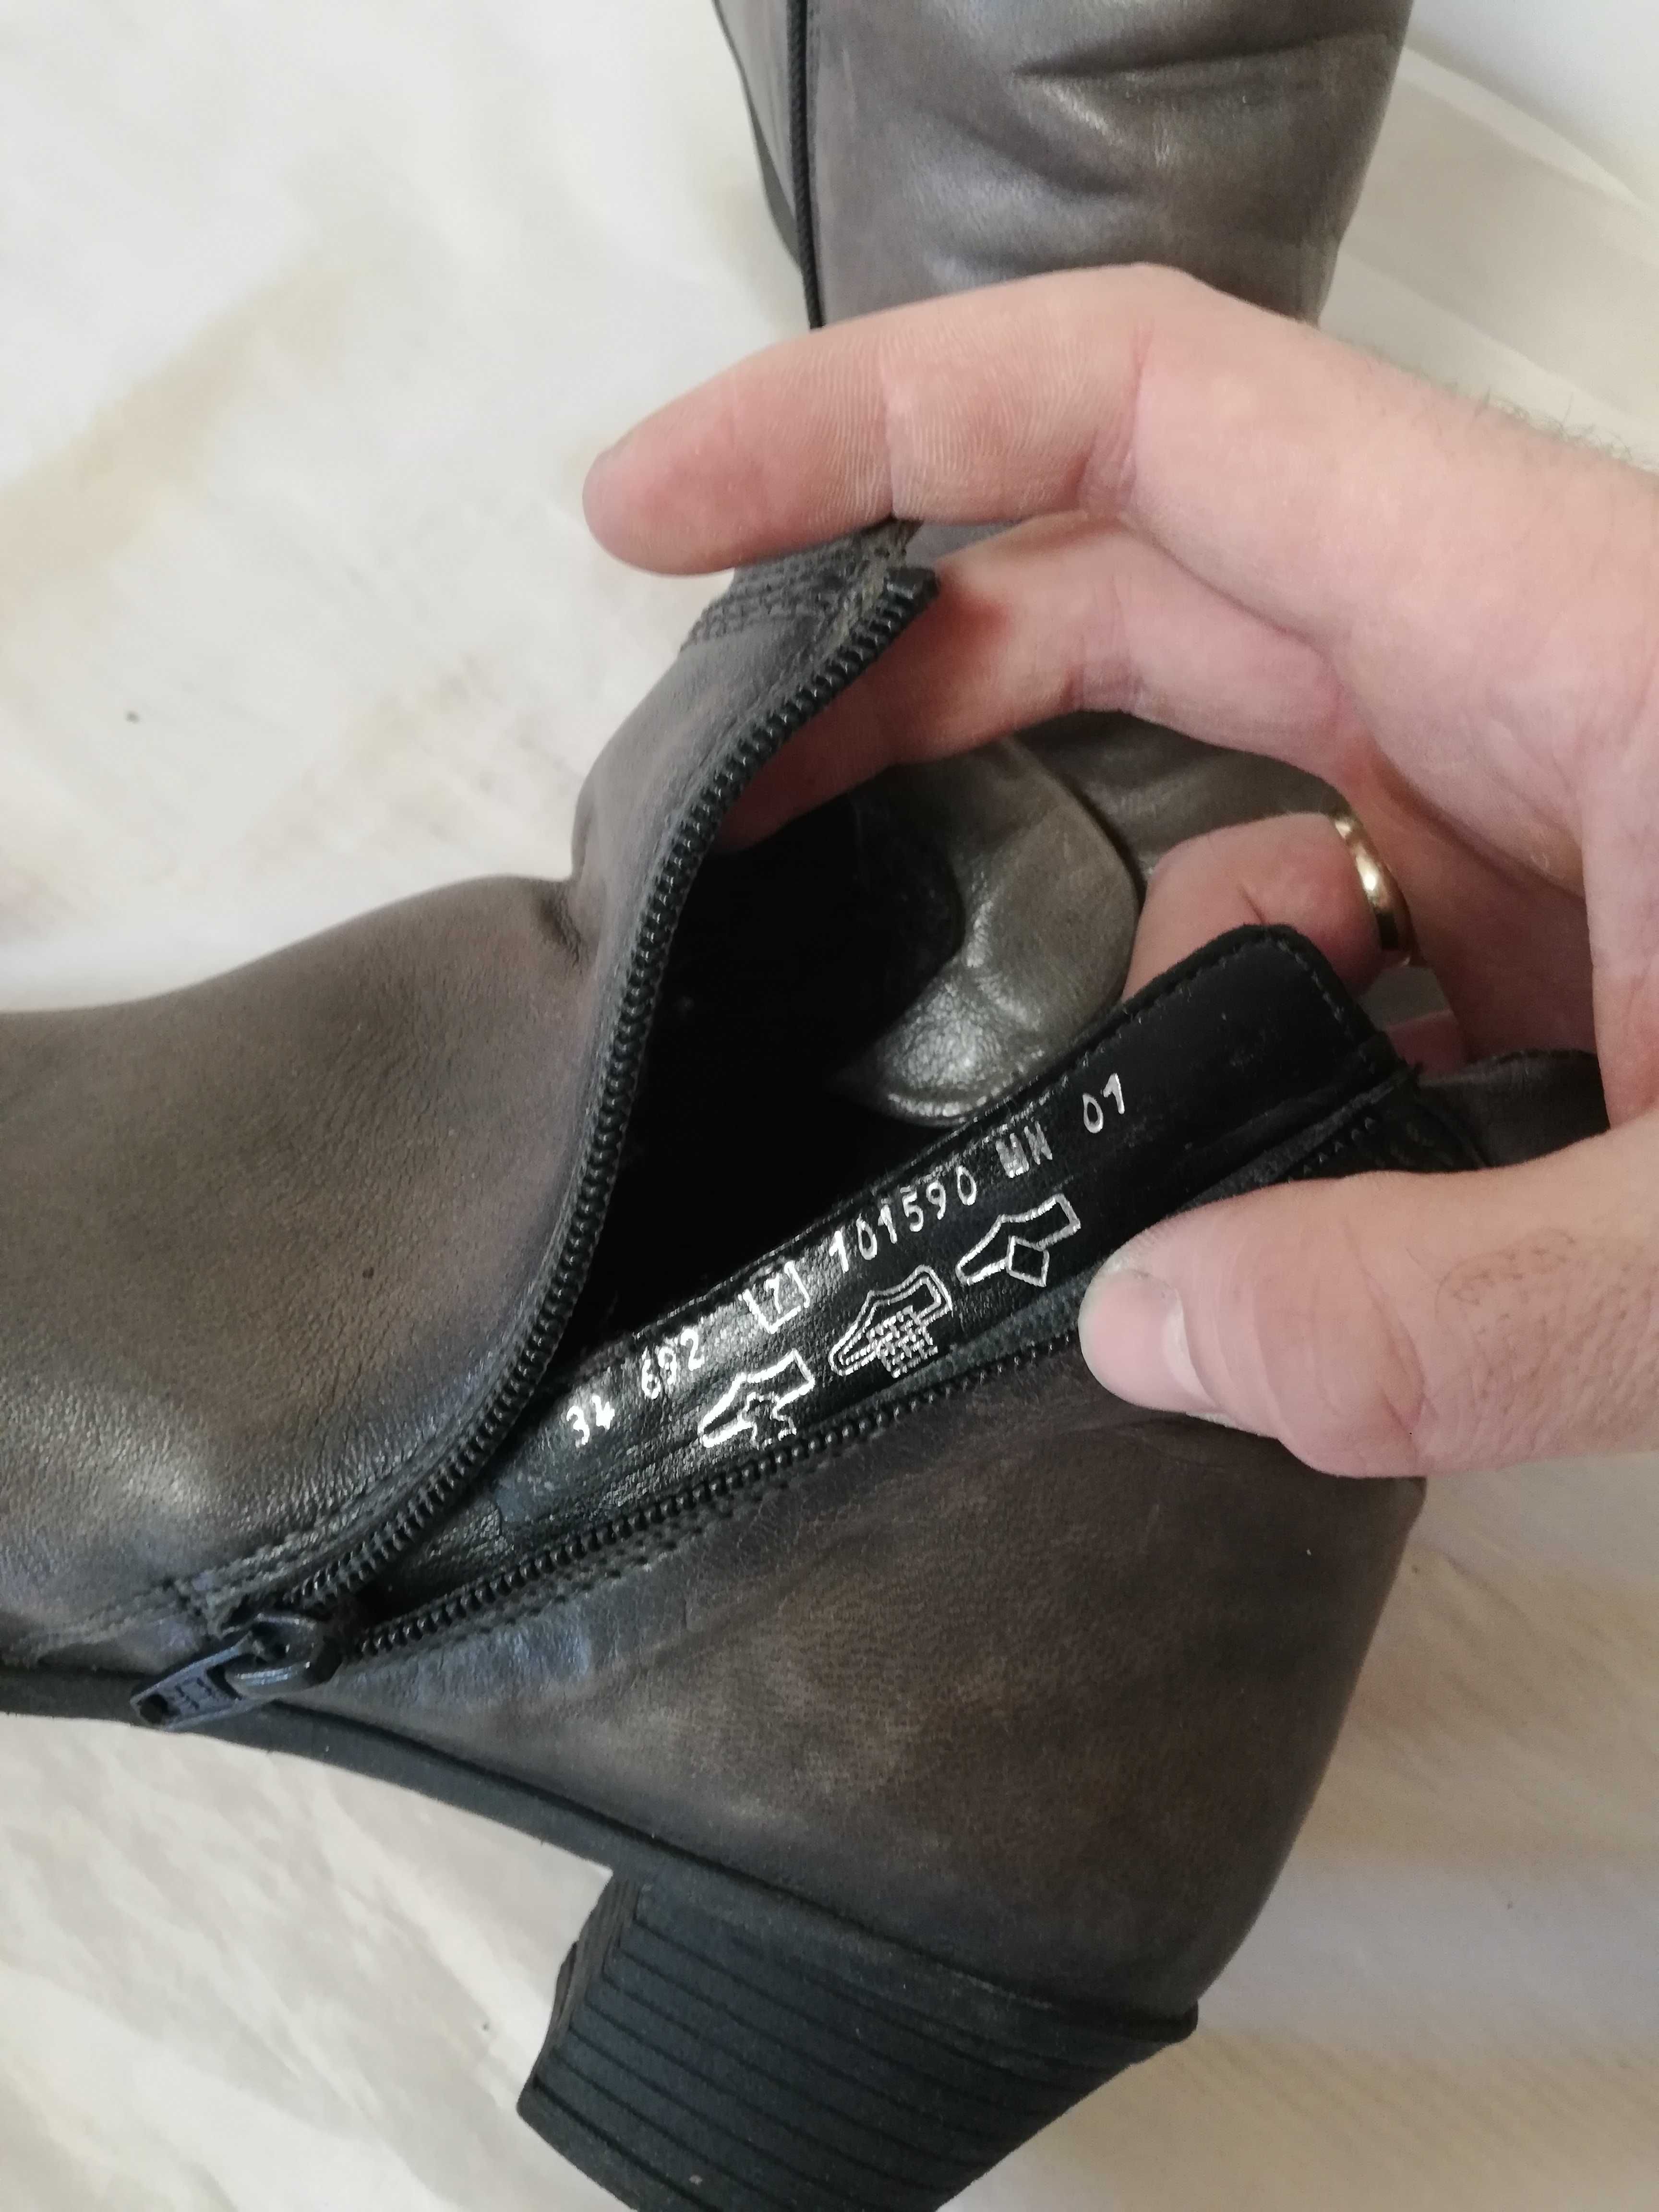 Buty botki skórzane Gabor UK 7 r. 41 , wkł 26,5 cm